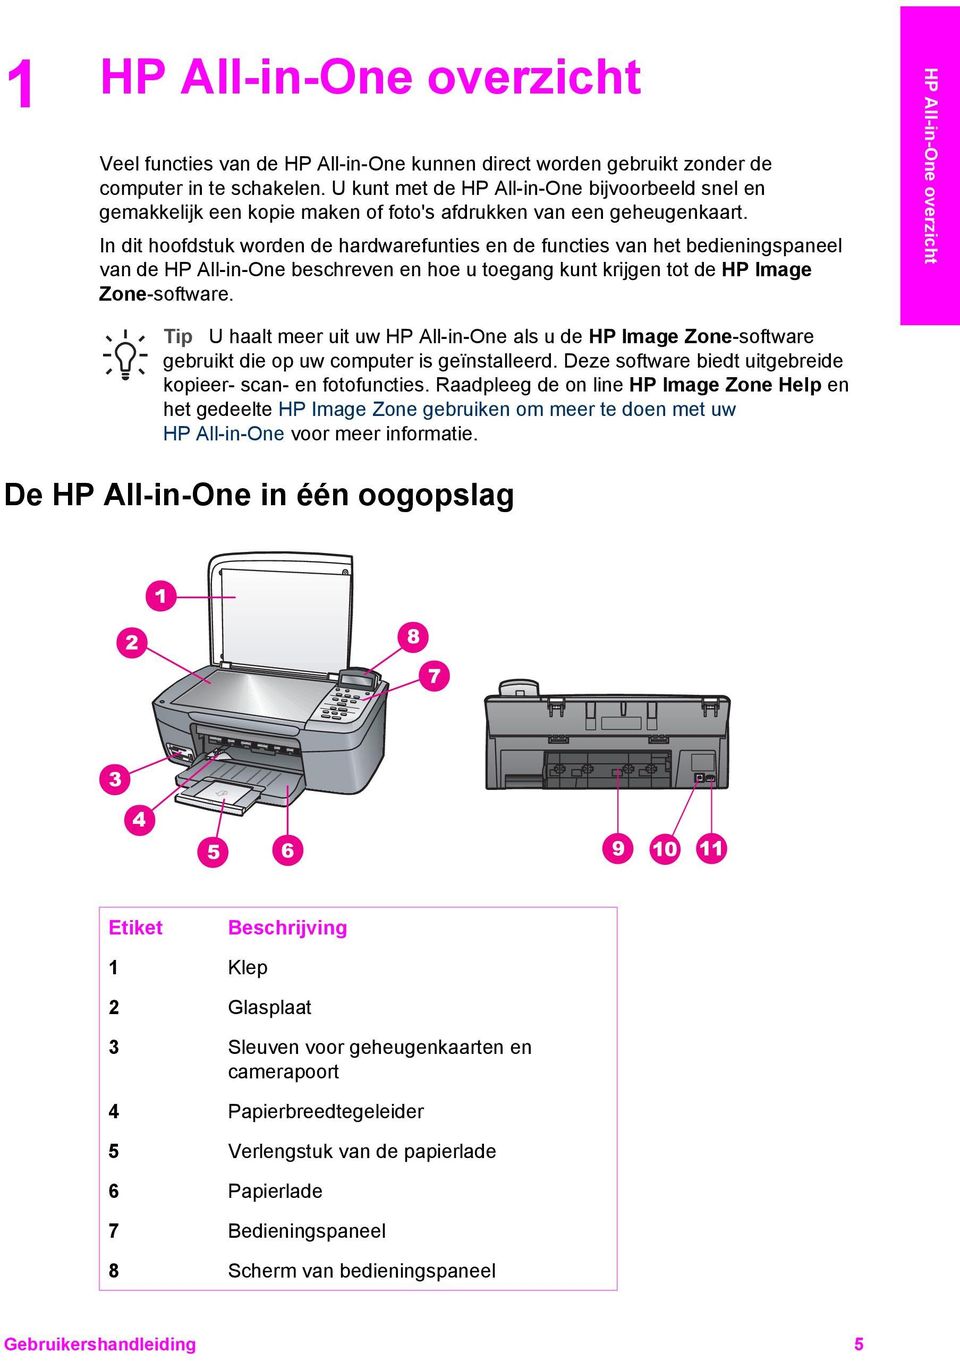 In dit hoofdstuk worden de hardwarefunties en de functies van het bedieningspaneel van de HP All-in-One beschreven en hoe u toegang kunt krijgen tot de HP Image Zone-software.